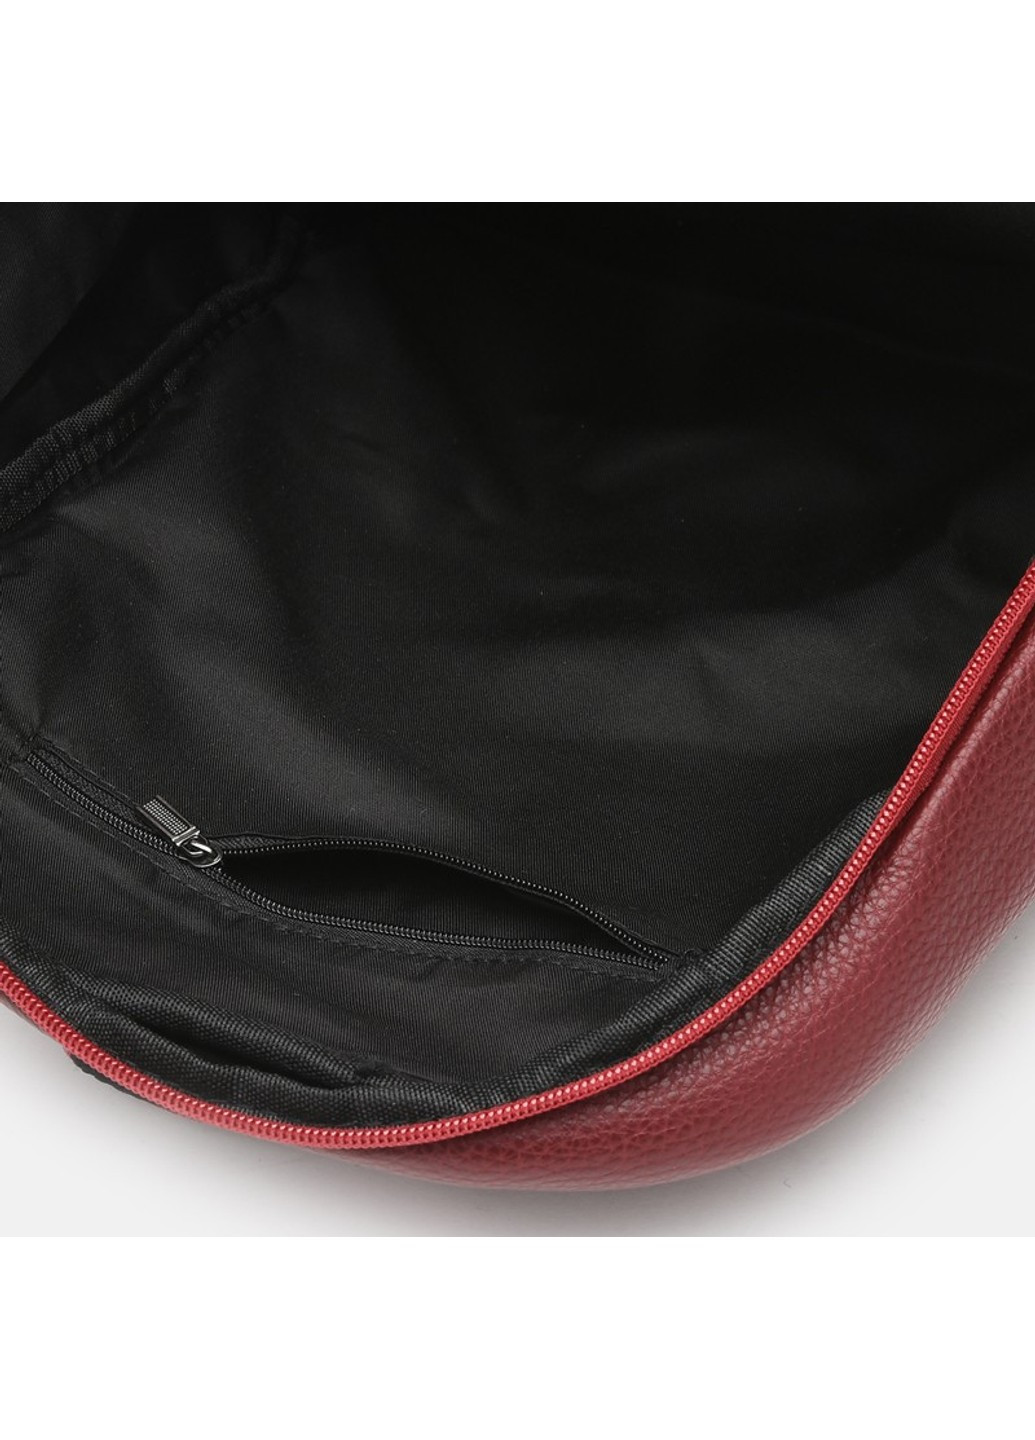 Женский кожаный рюкзак K18833b-bordo Keizer (266144034)